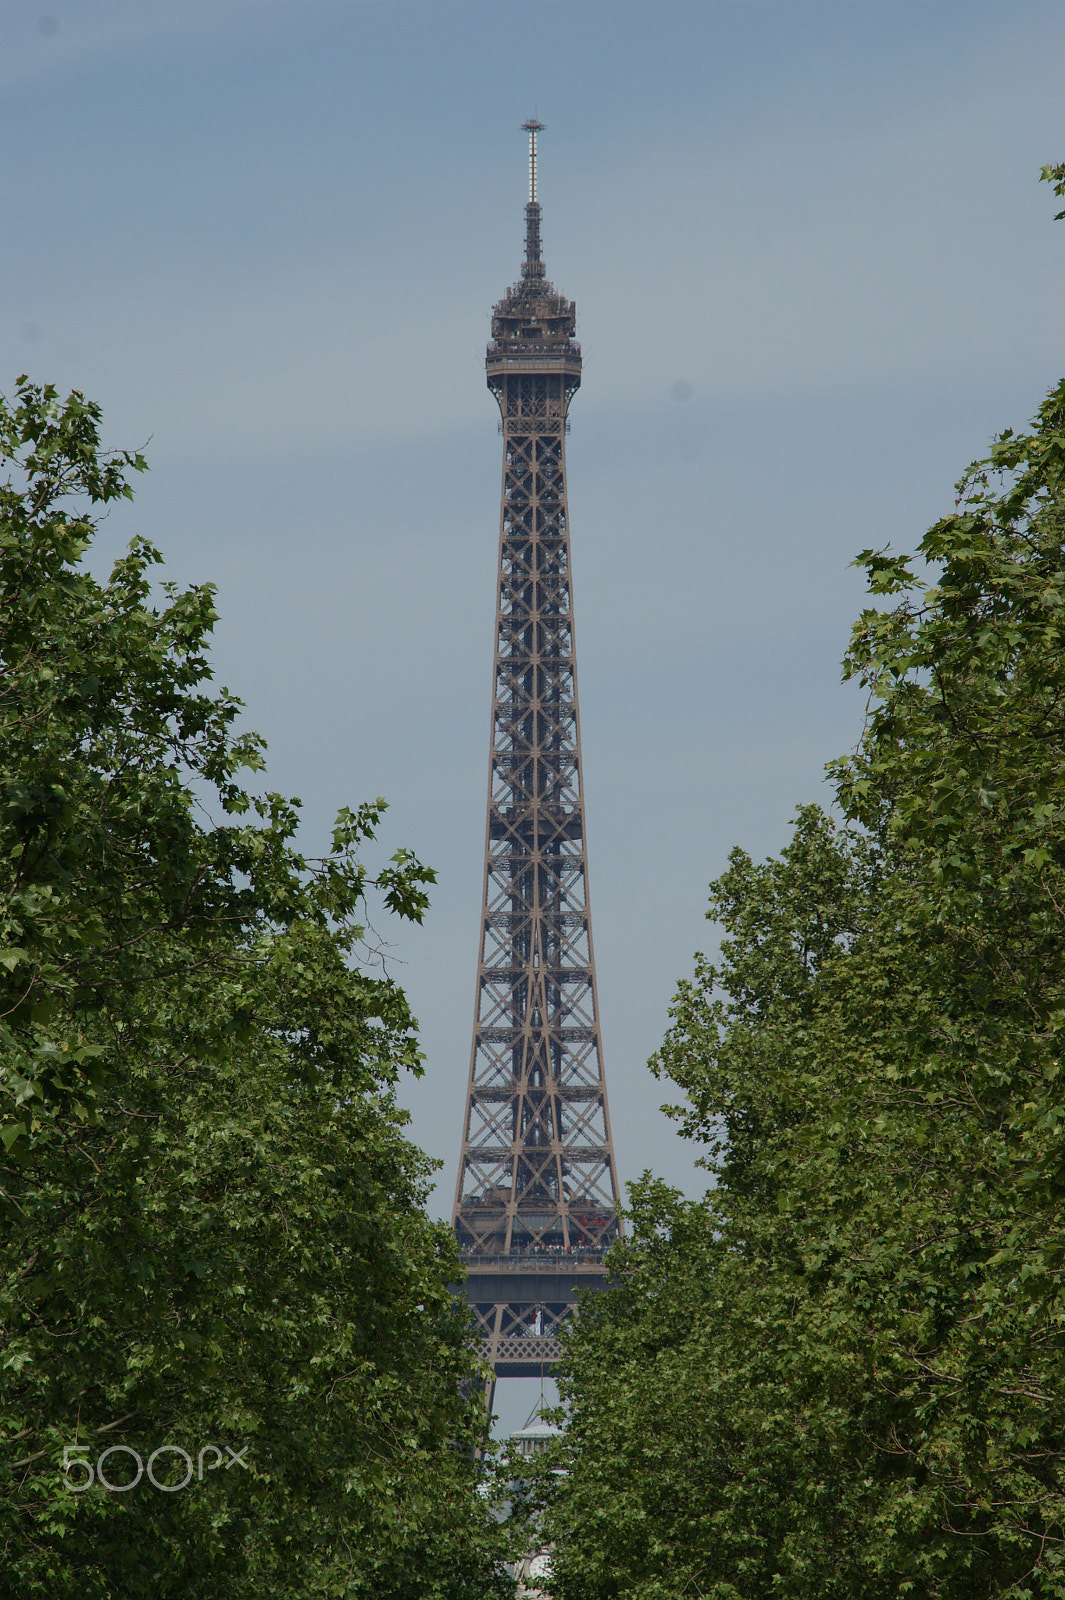 Sony Alpha DSLR-A350 sample photo. Eiffel tower 2 photography